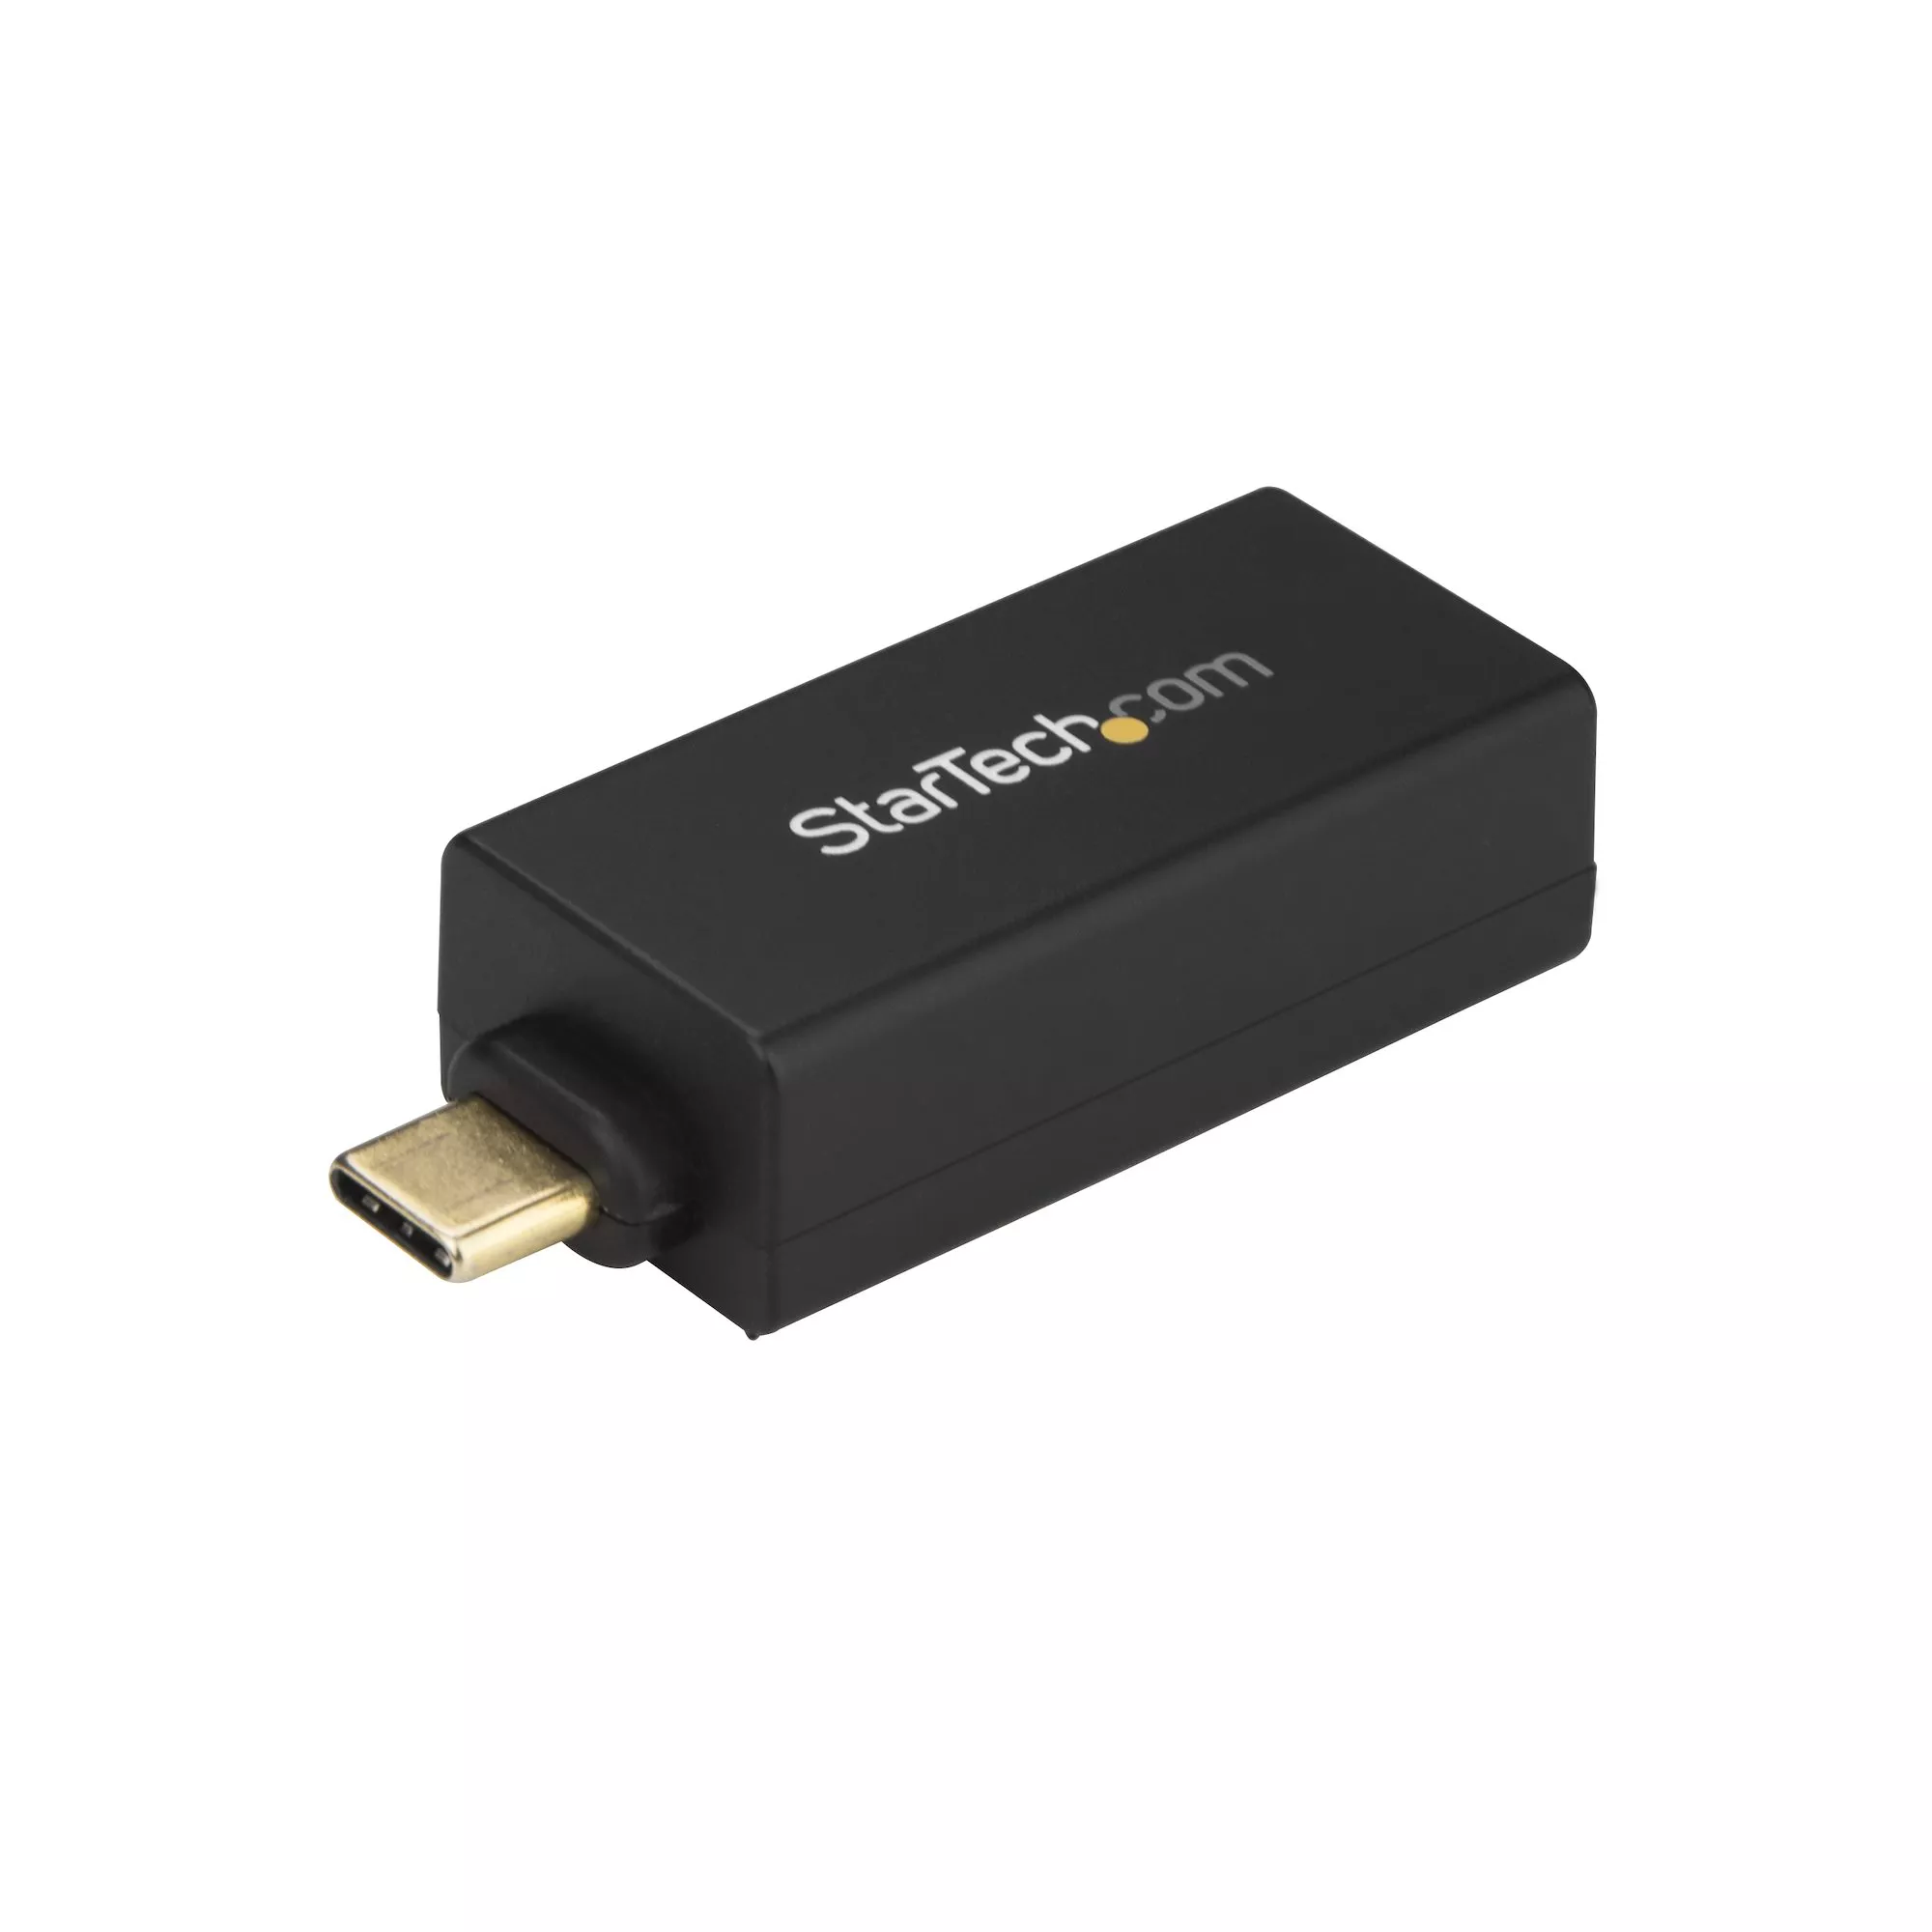 Achat Station d'accueil pour portable StarTech.com Adaptateur USB C vers Gigabit Ethernet